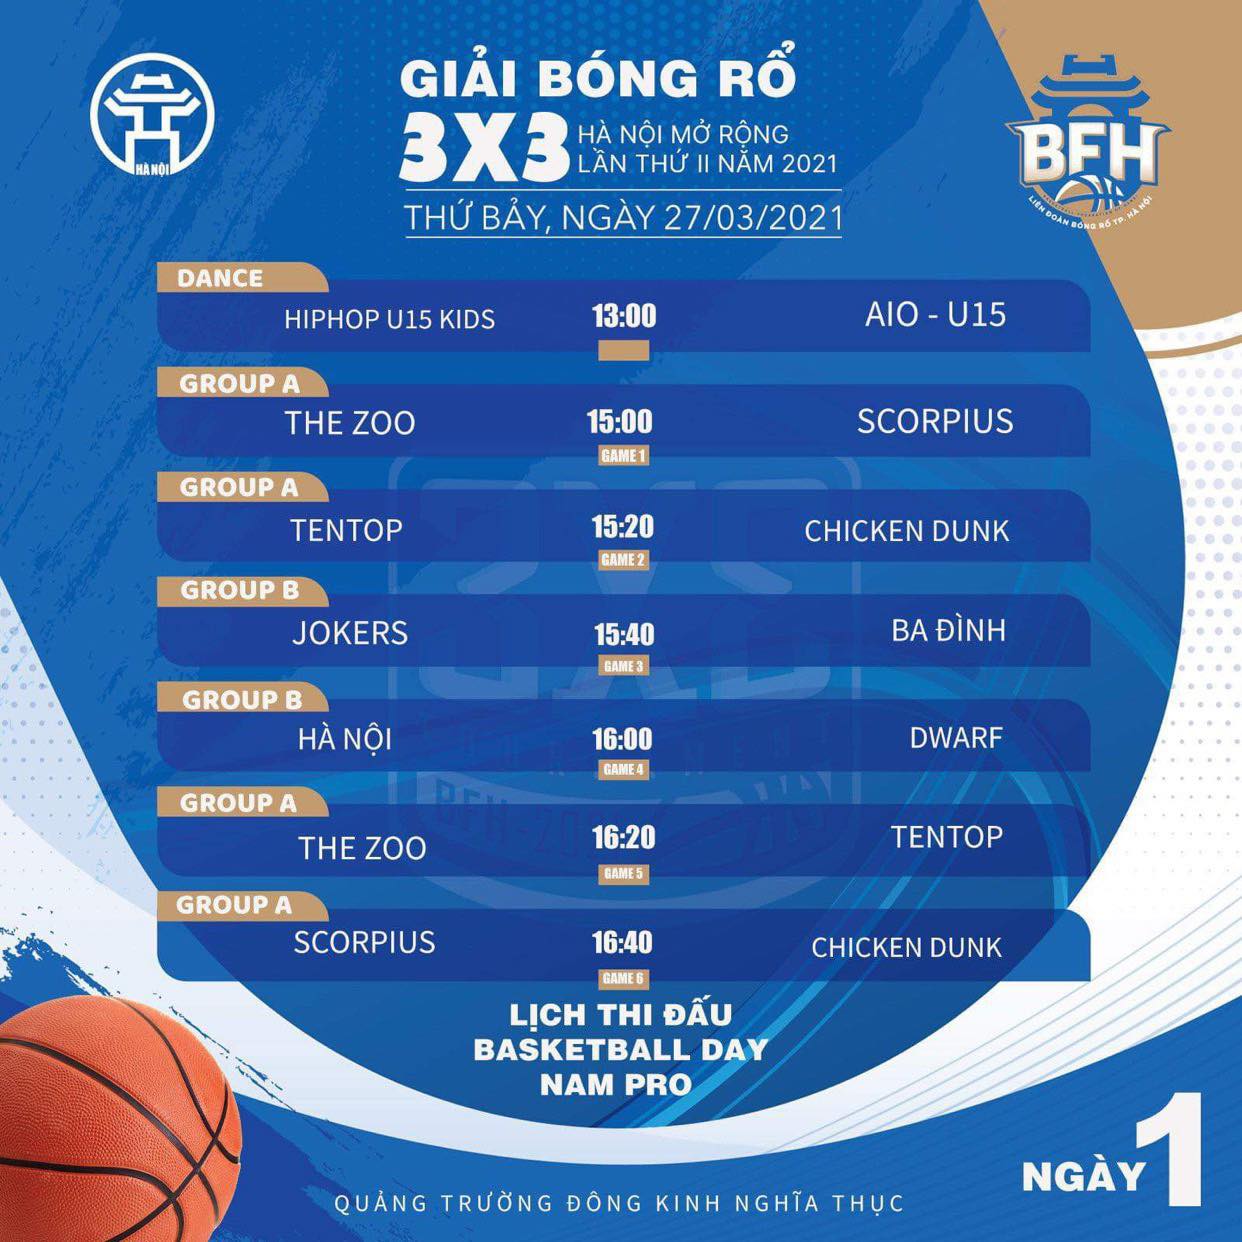 Lịch thi đấu giải bóng rổ 3x3 Hà Nội mở rộng lần 2 năm 2021 - Ảnh 4